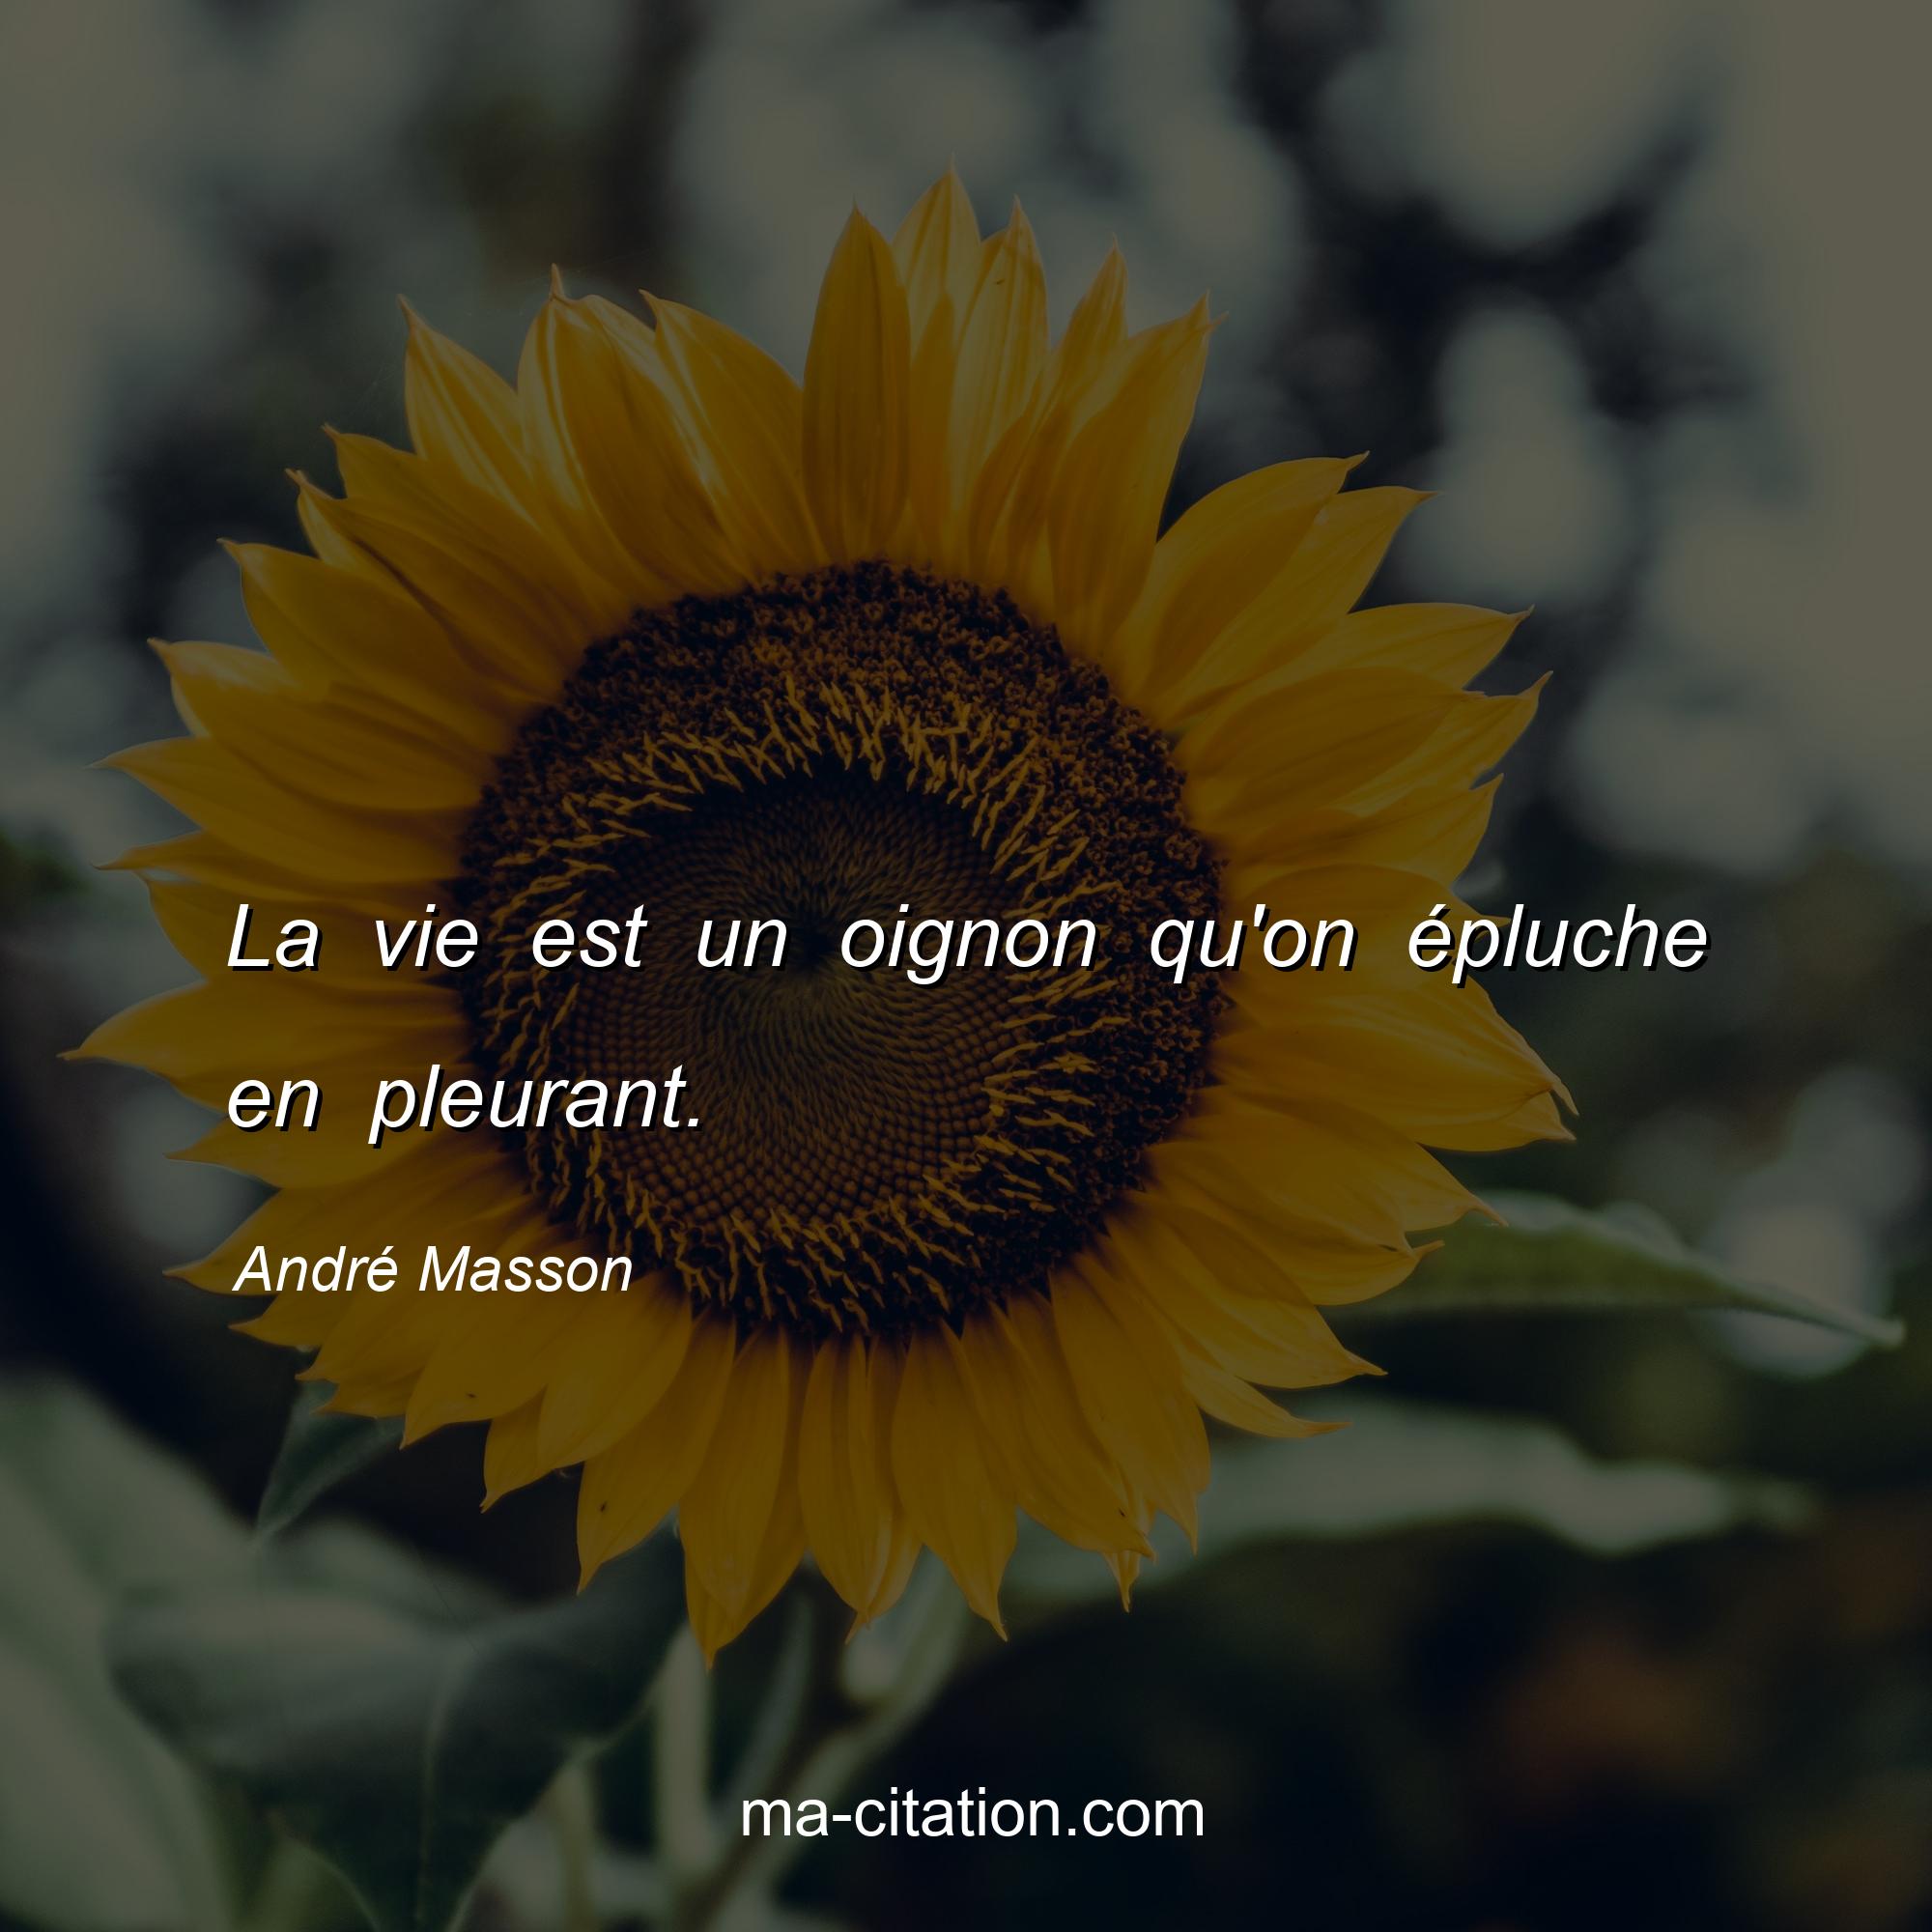 André Masson : La vie est un oignon qu'on épluche en pleurant.